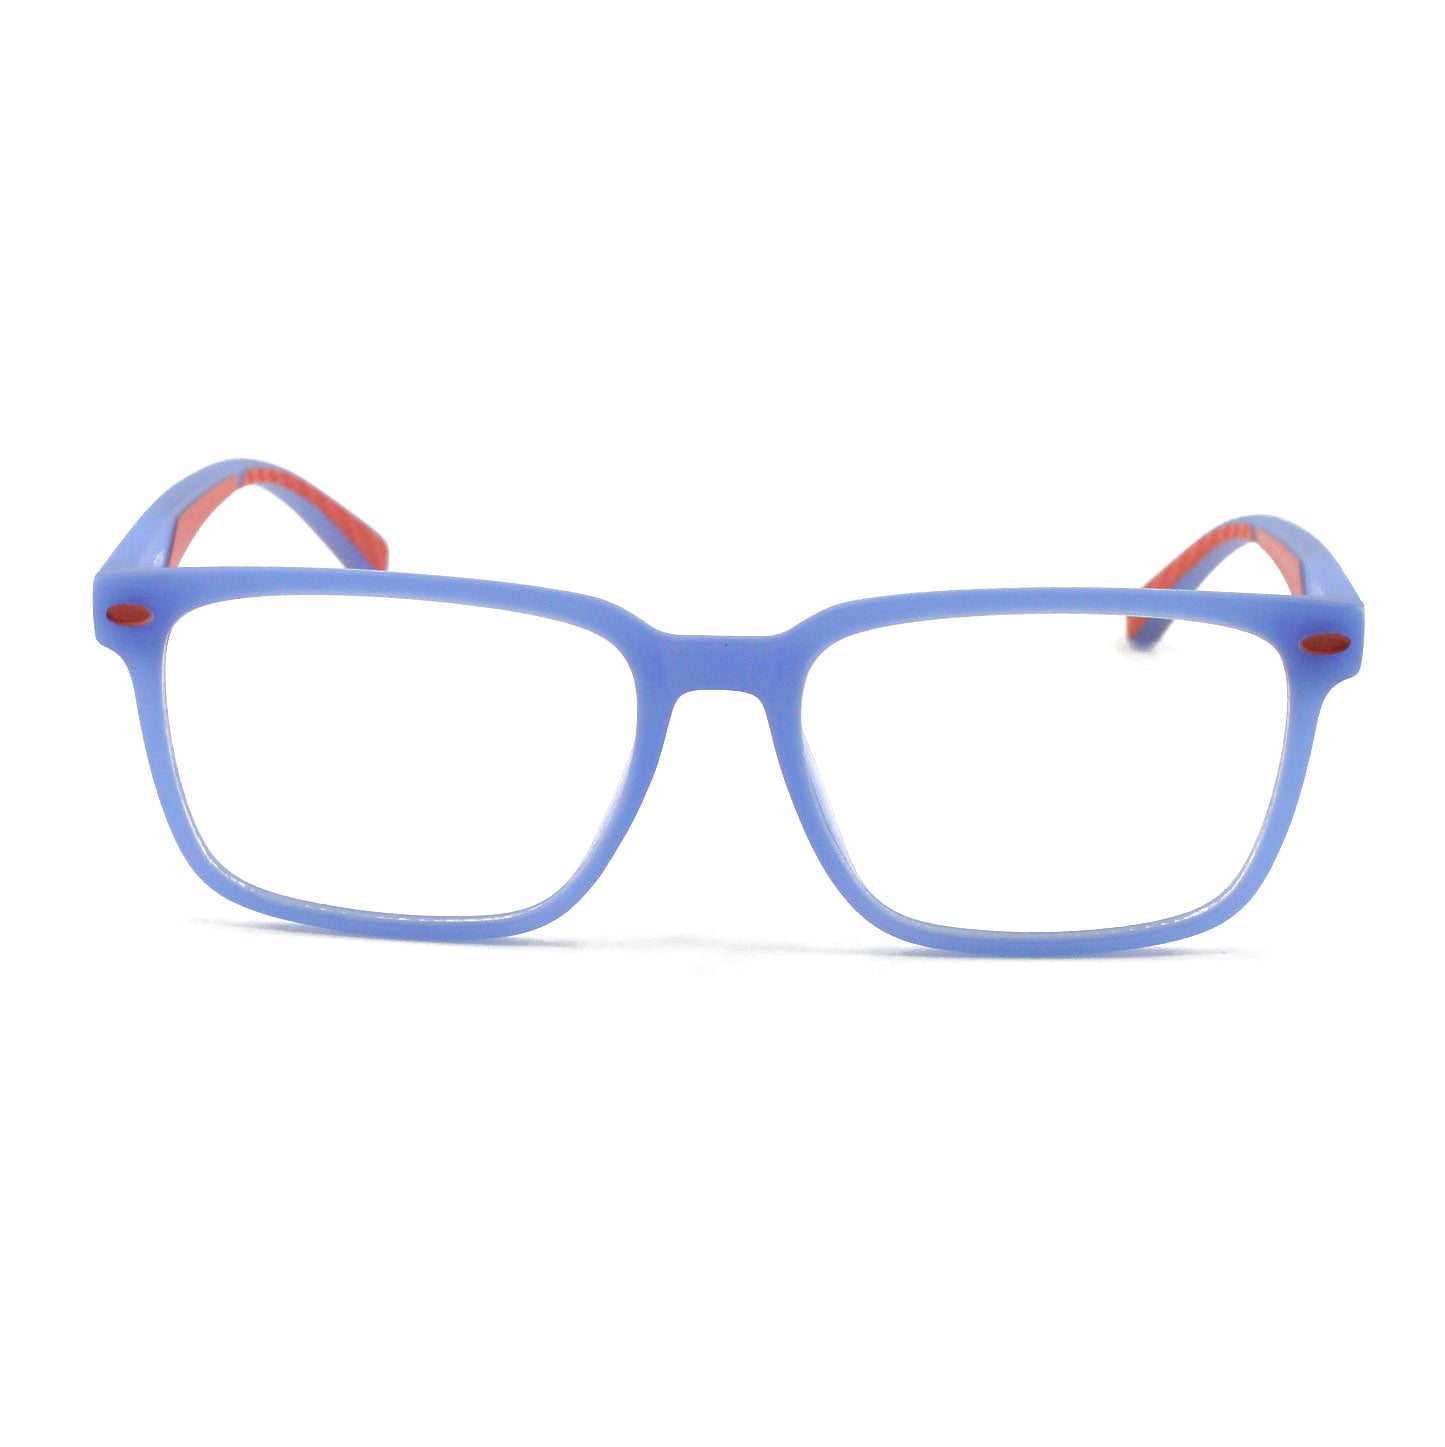 Ottika Care - Occhiali anti luce blu | Modello TR5101